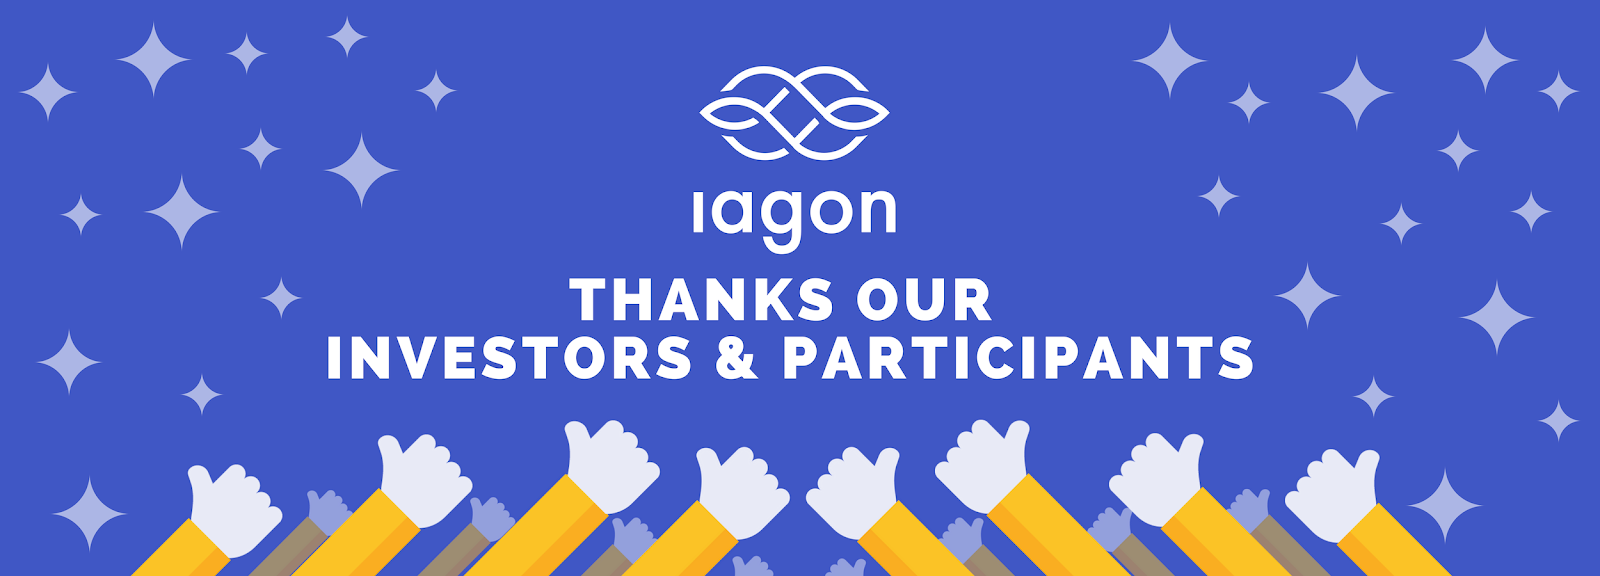 IAGON Thanks Our Investors & Participants